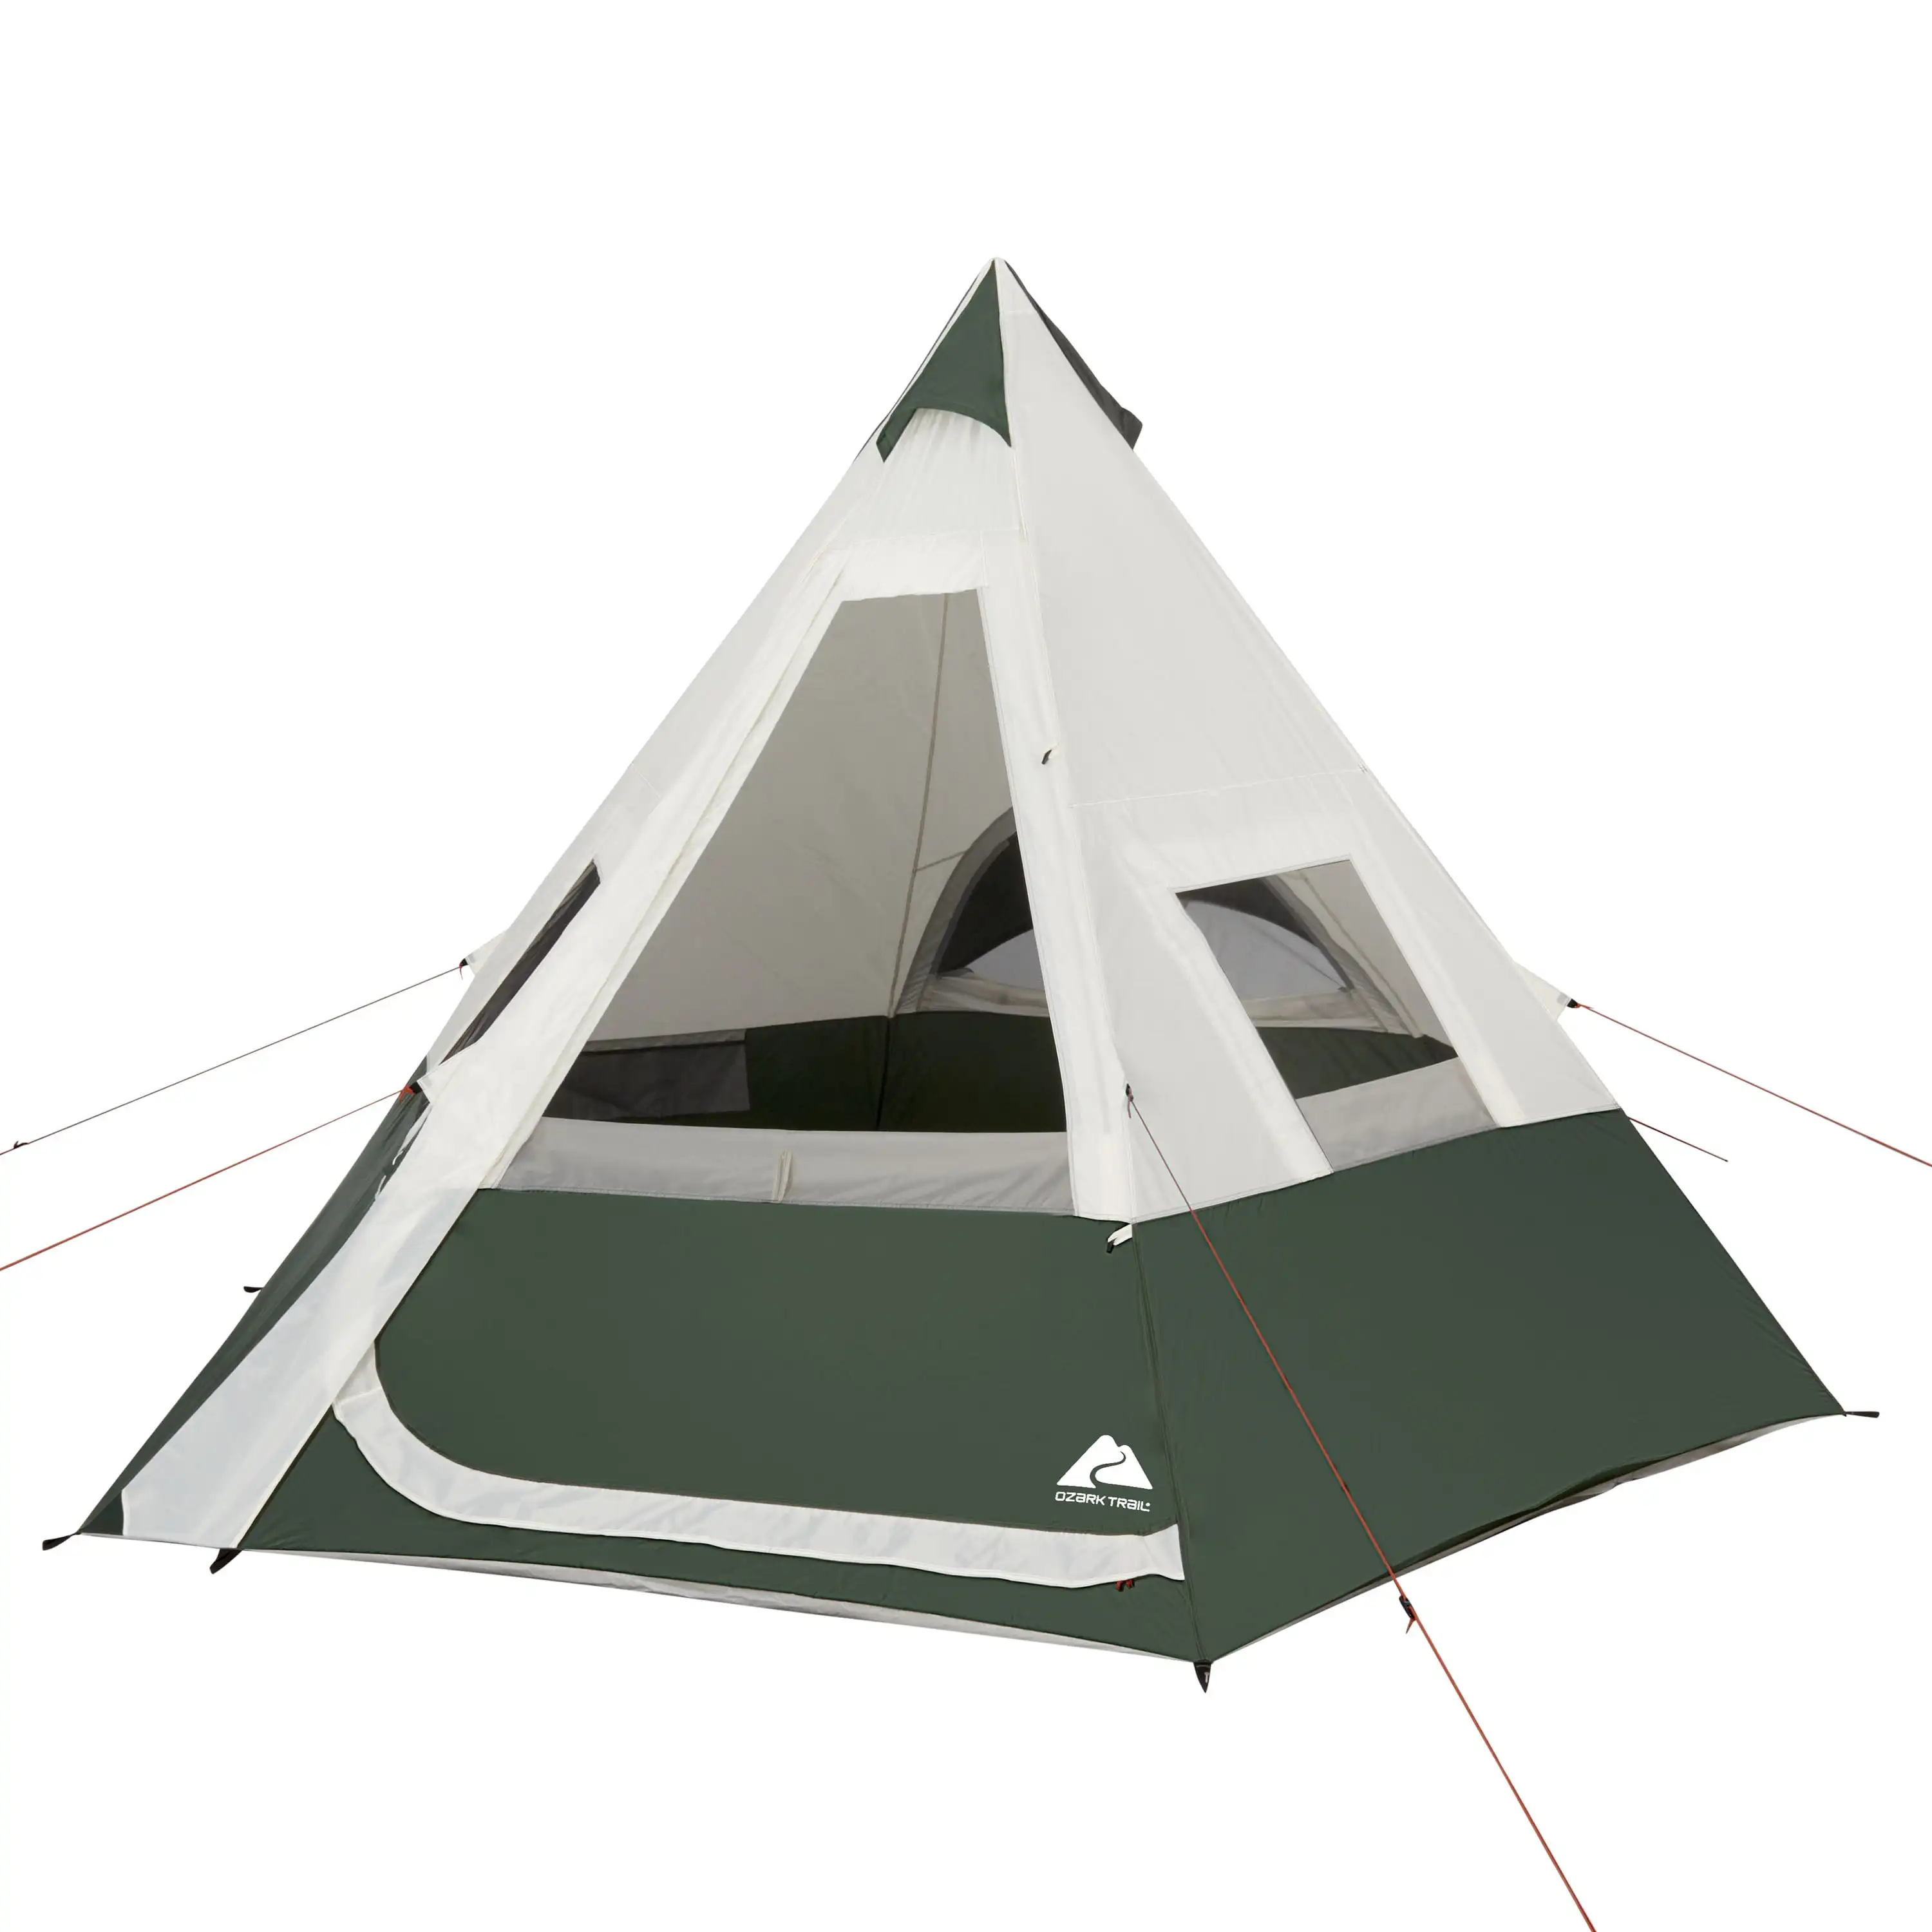 

Палатка Ozark Trail на 7 человек, 1 комната, для кемпинга на открытом воздухе, с вентиляционным задним окном, просторный интерьер, может вместить д...